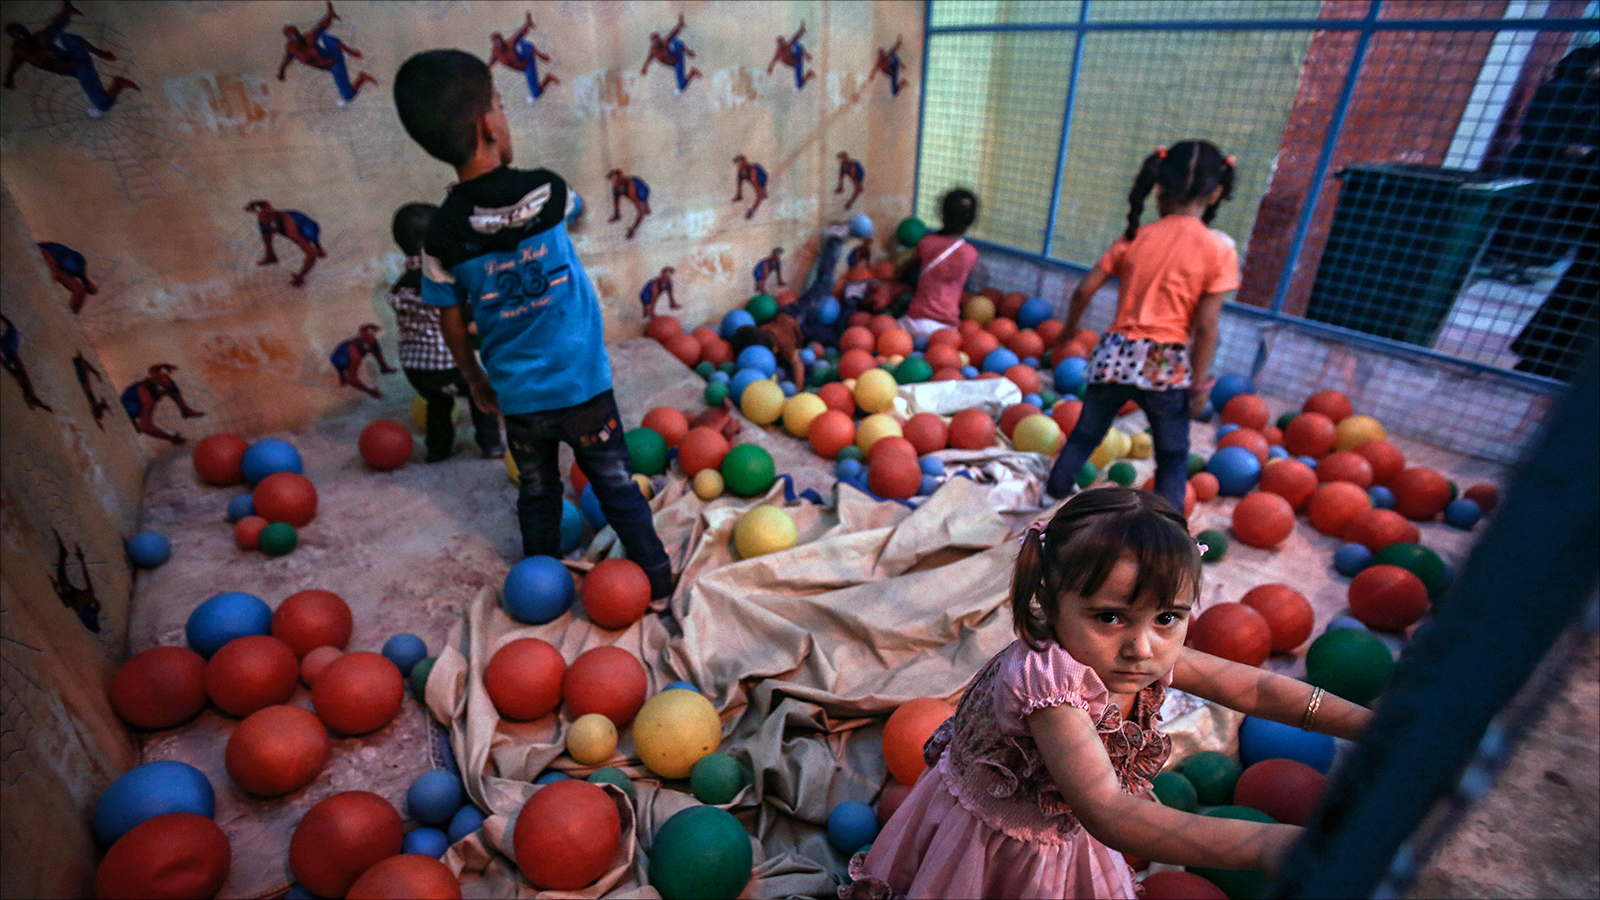 الأهالي أصروا على تهيئة أجواء ملائمة لفرح الأطفال في دوما (الأوروبية)